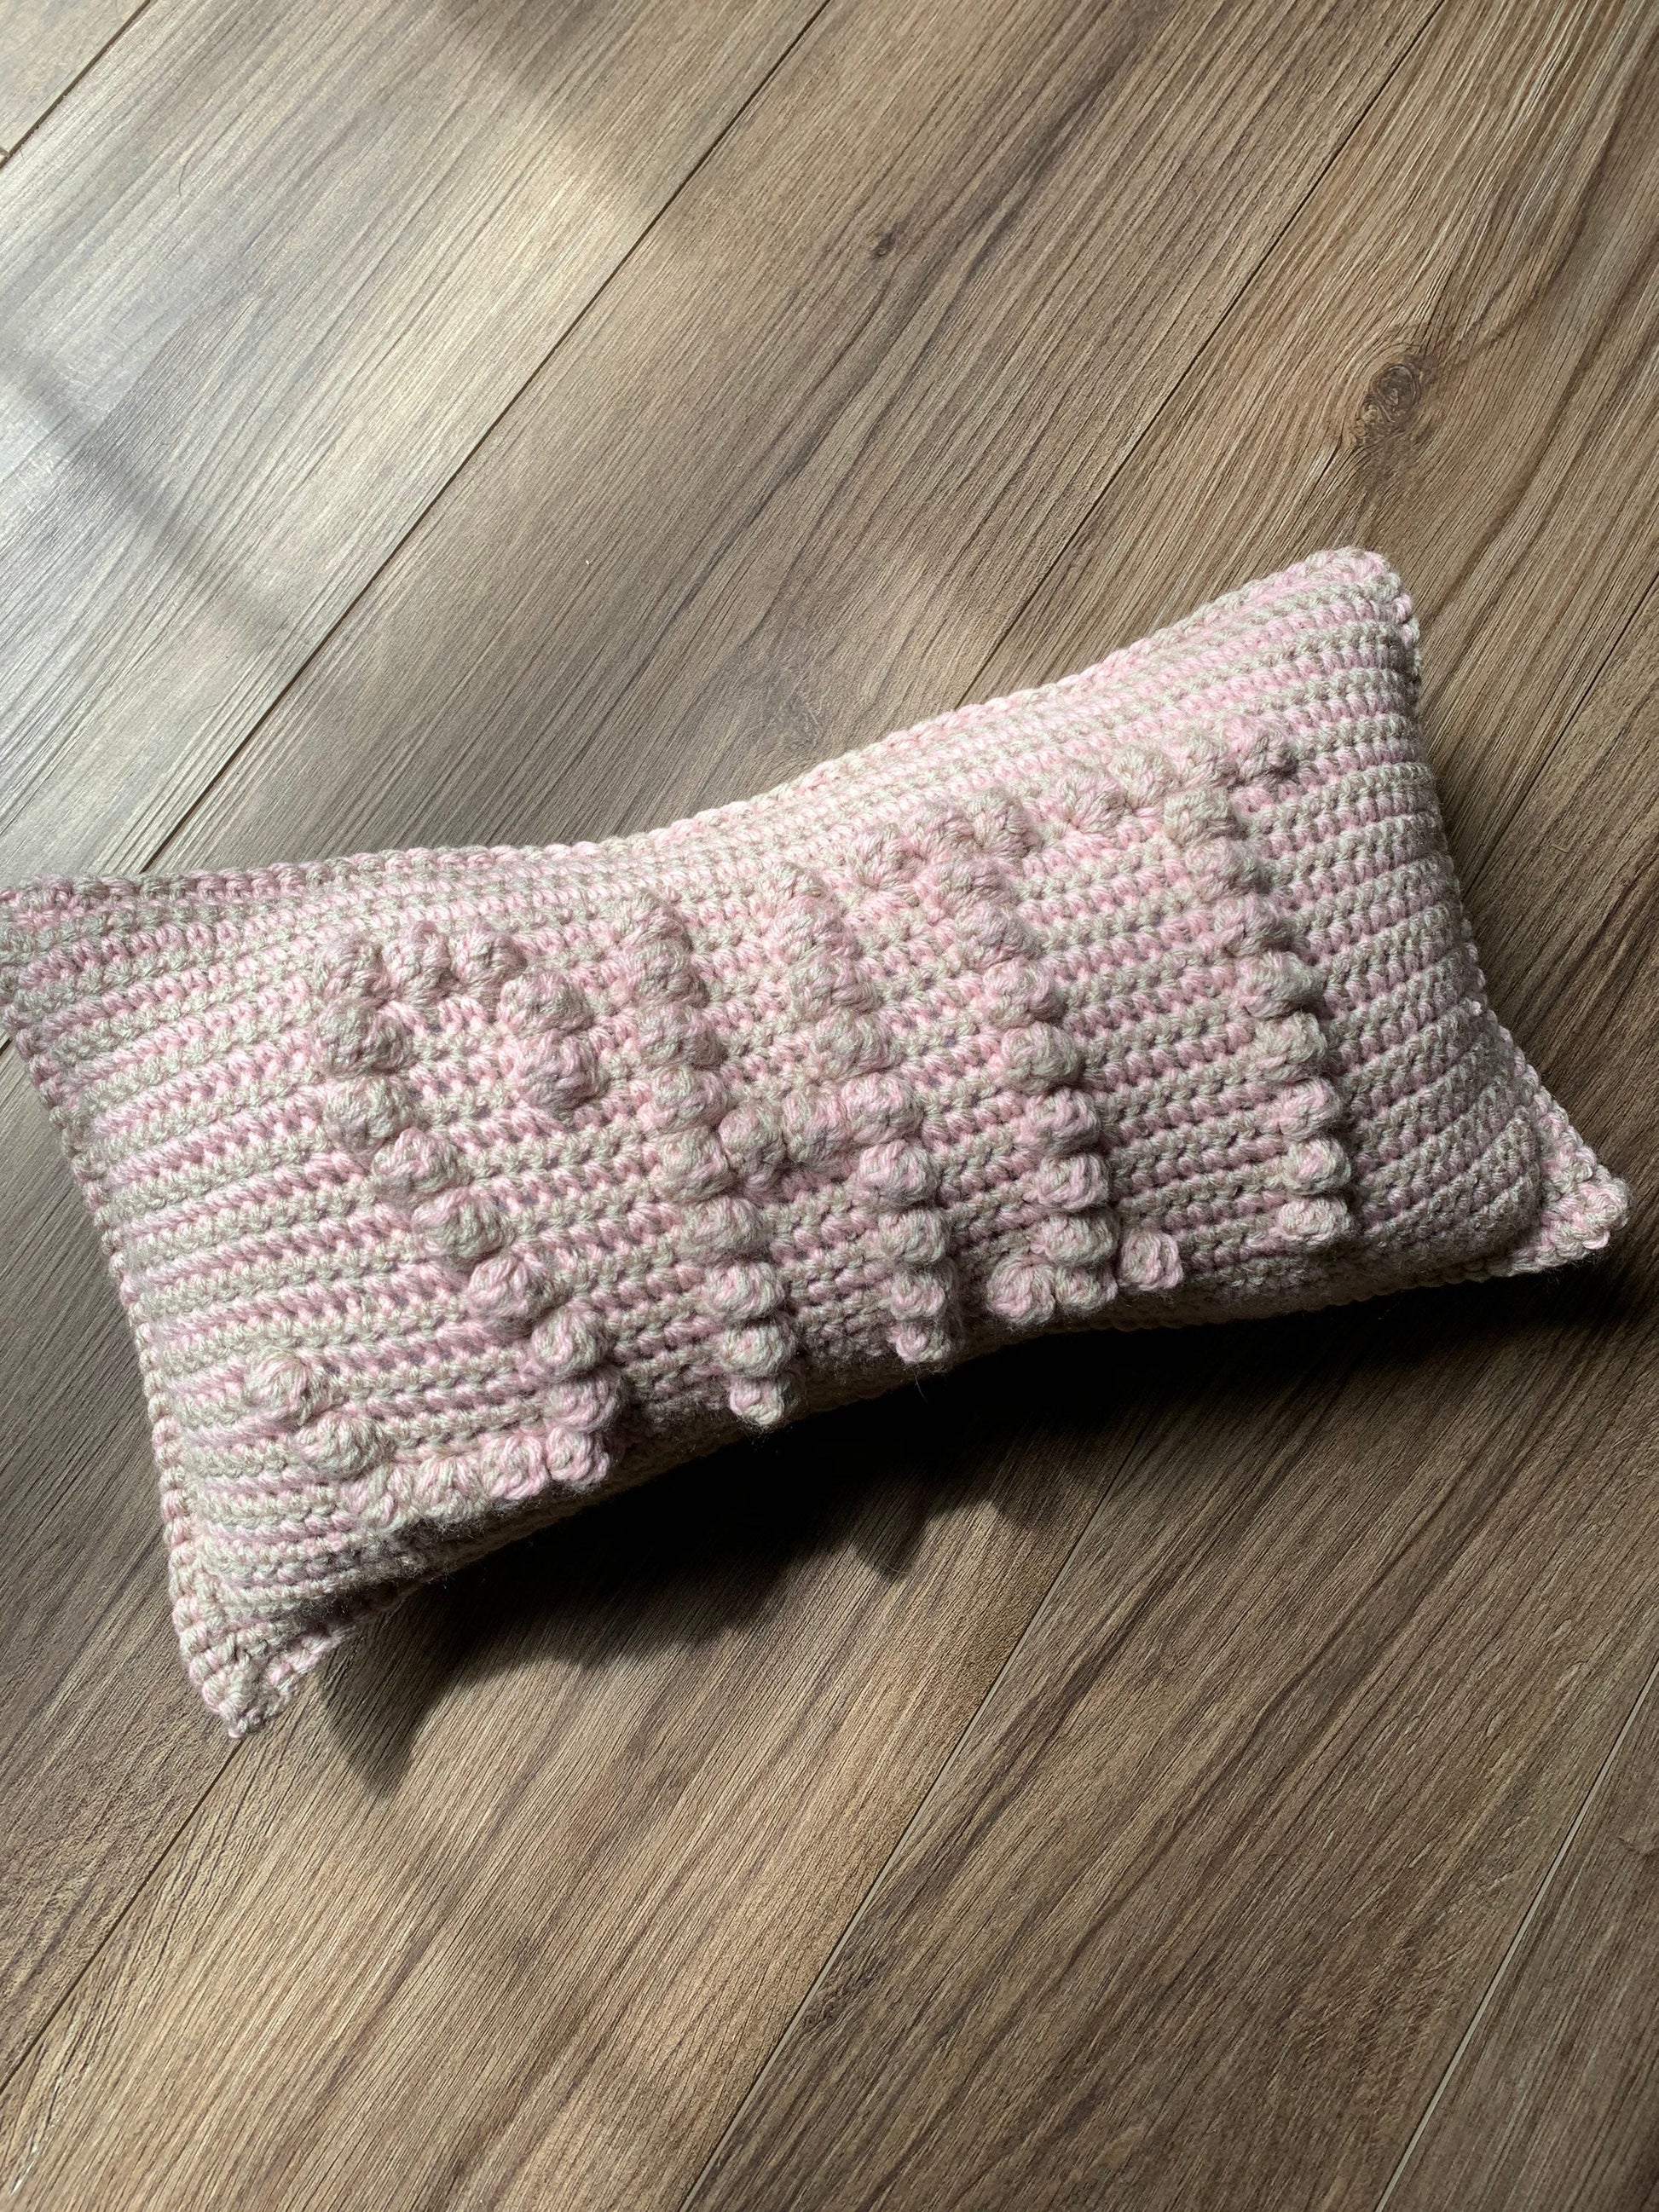 Douche Bag Pattern, PDF Download Crochet Pattern, Easy Crochet